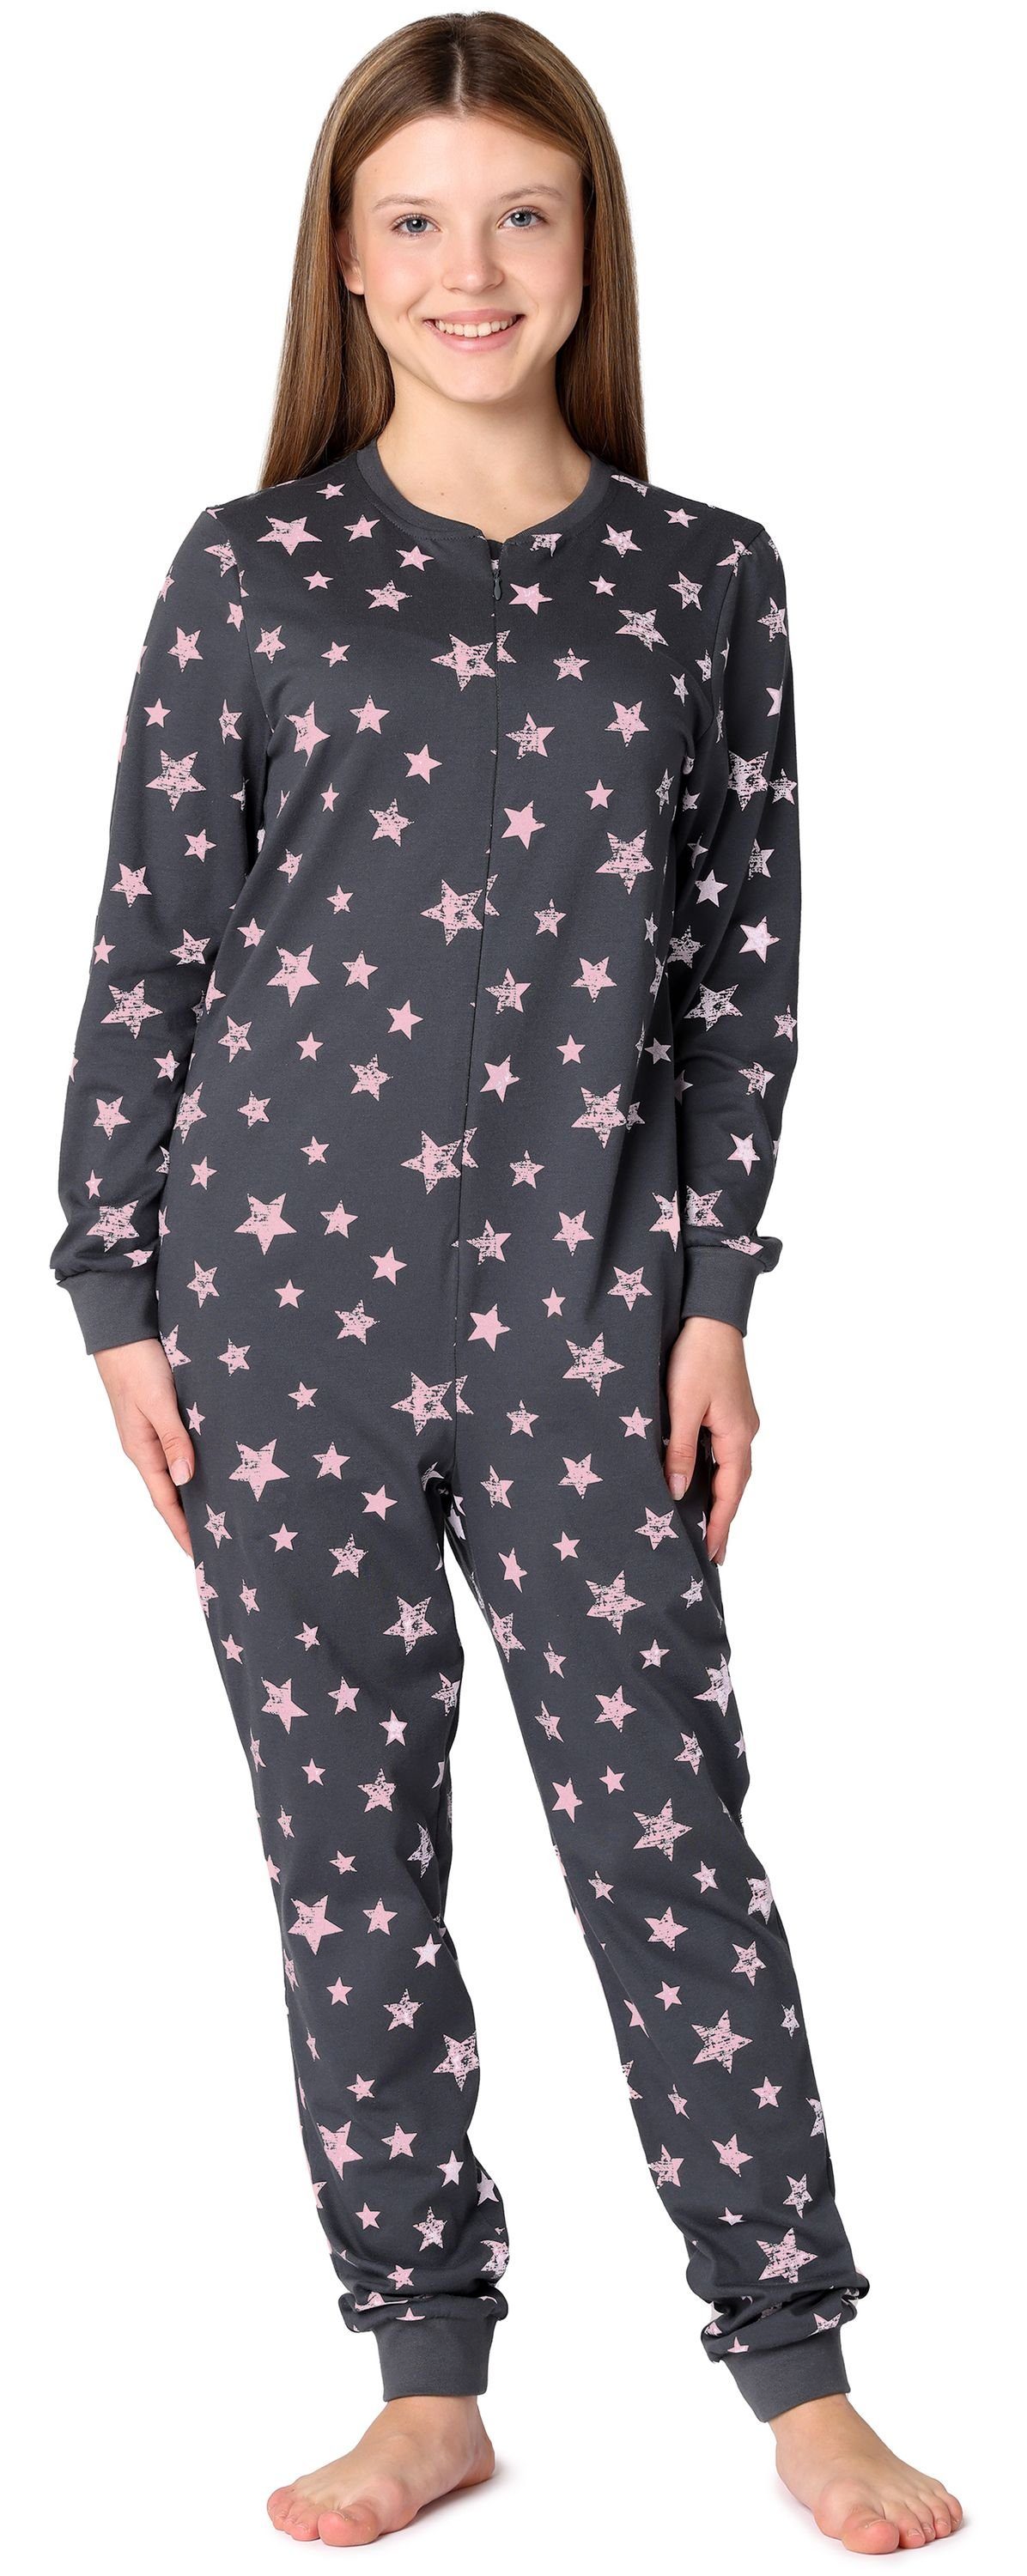 Merry Style Schlafanzug Mädchen Jugend Schlafanzug Schlafoverall MS10-235 Grafit/Rosa Sterne